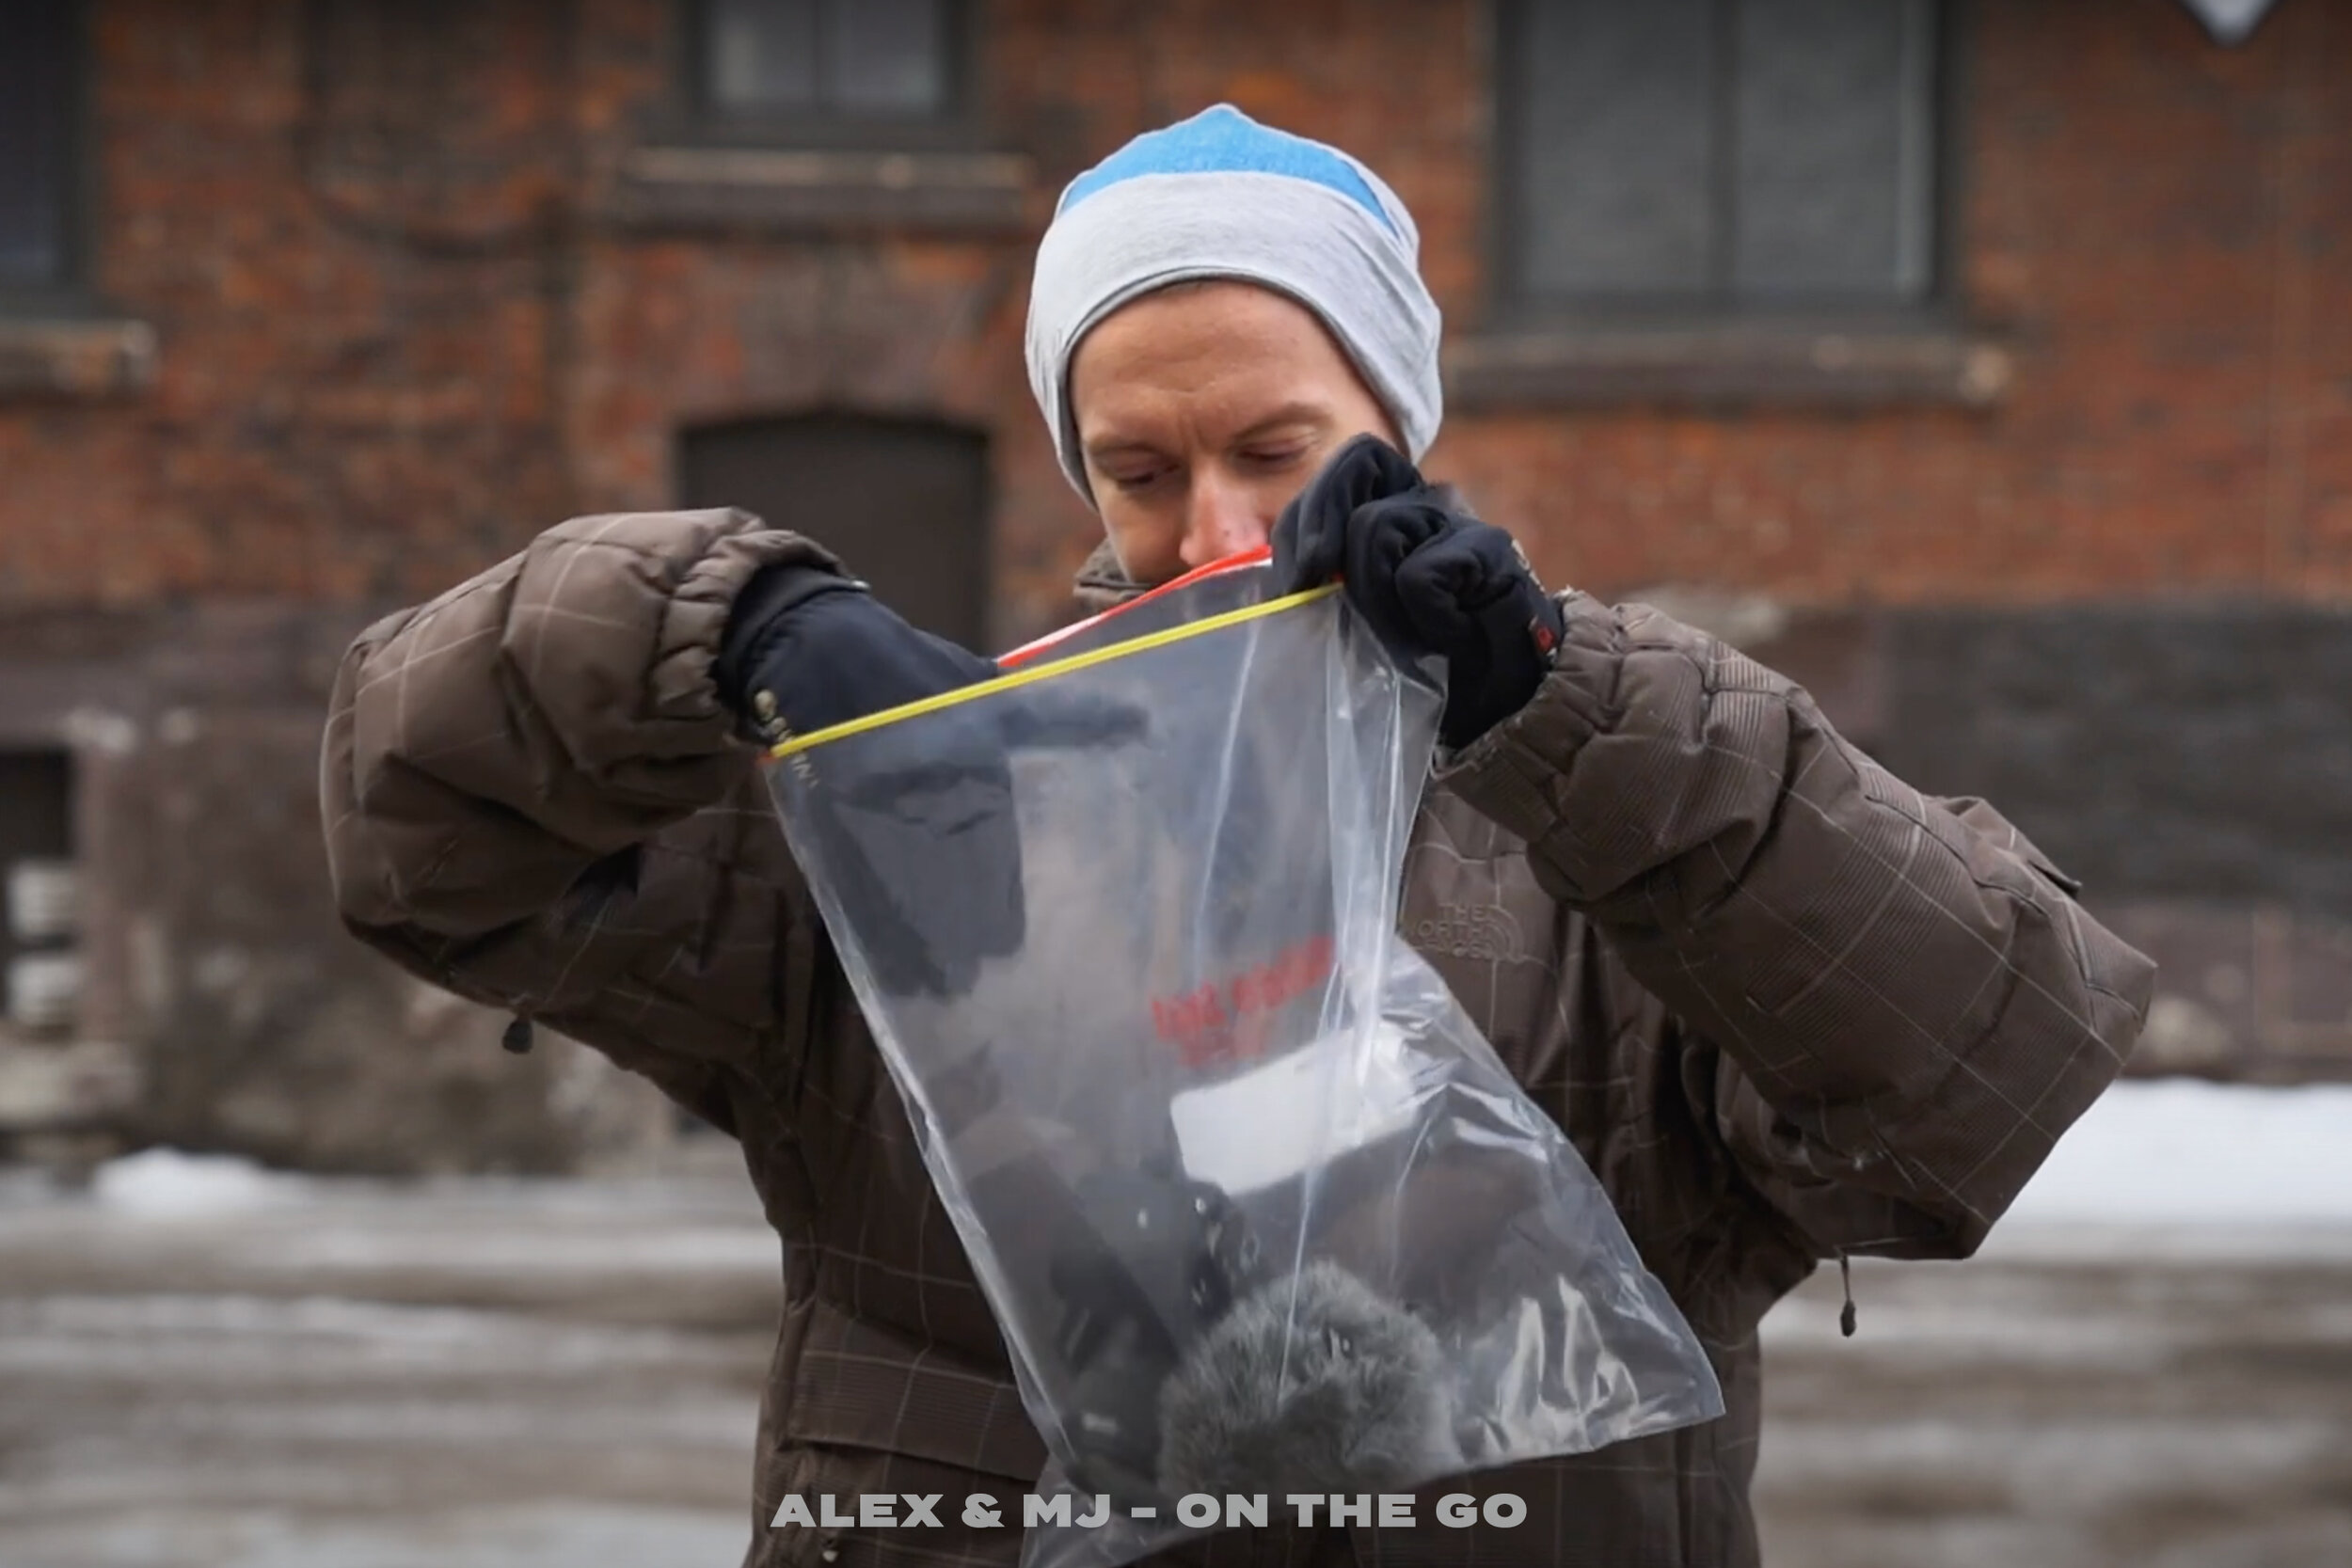 Alex-MJ-On-the-GO-Conseils-filmer-temps-froid-sac-de-congelation-deposer-camera.jpg